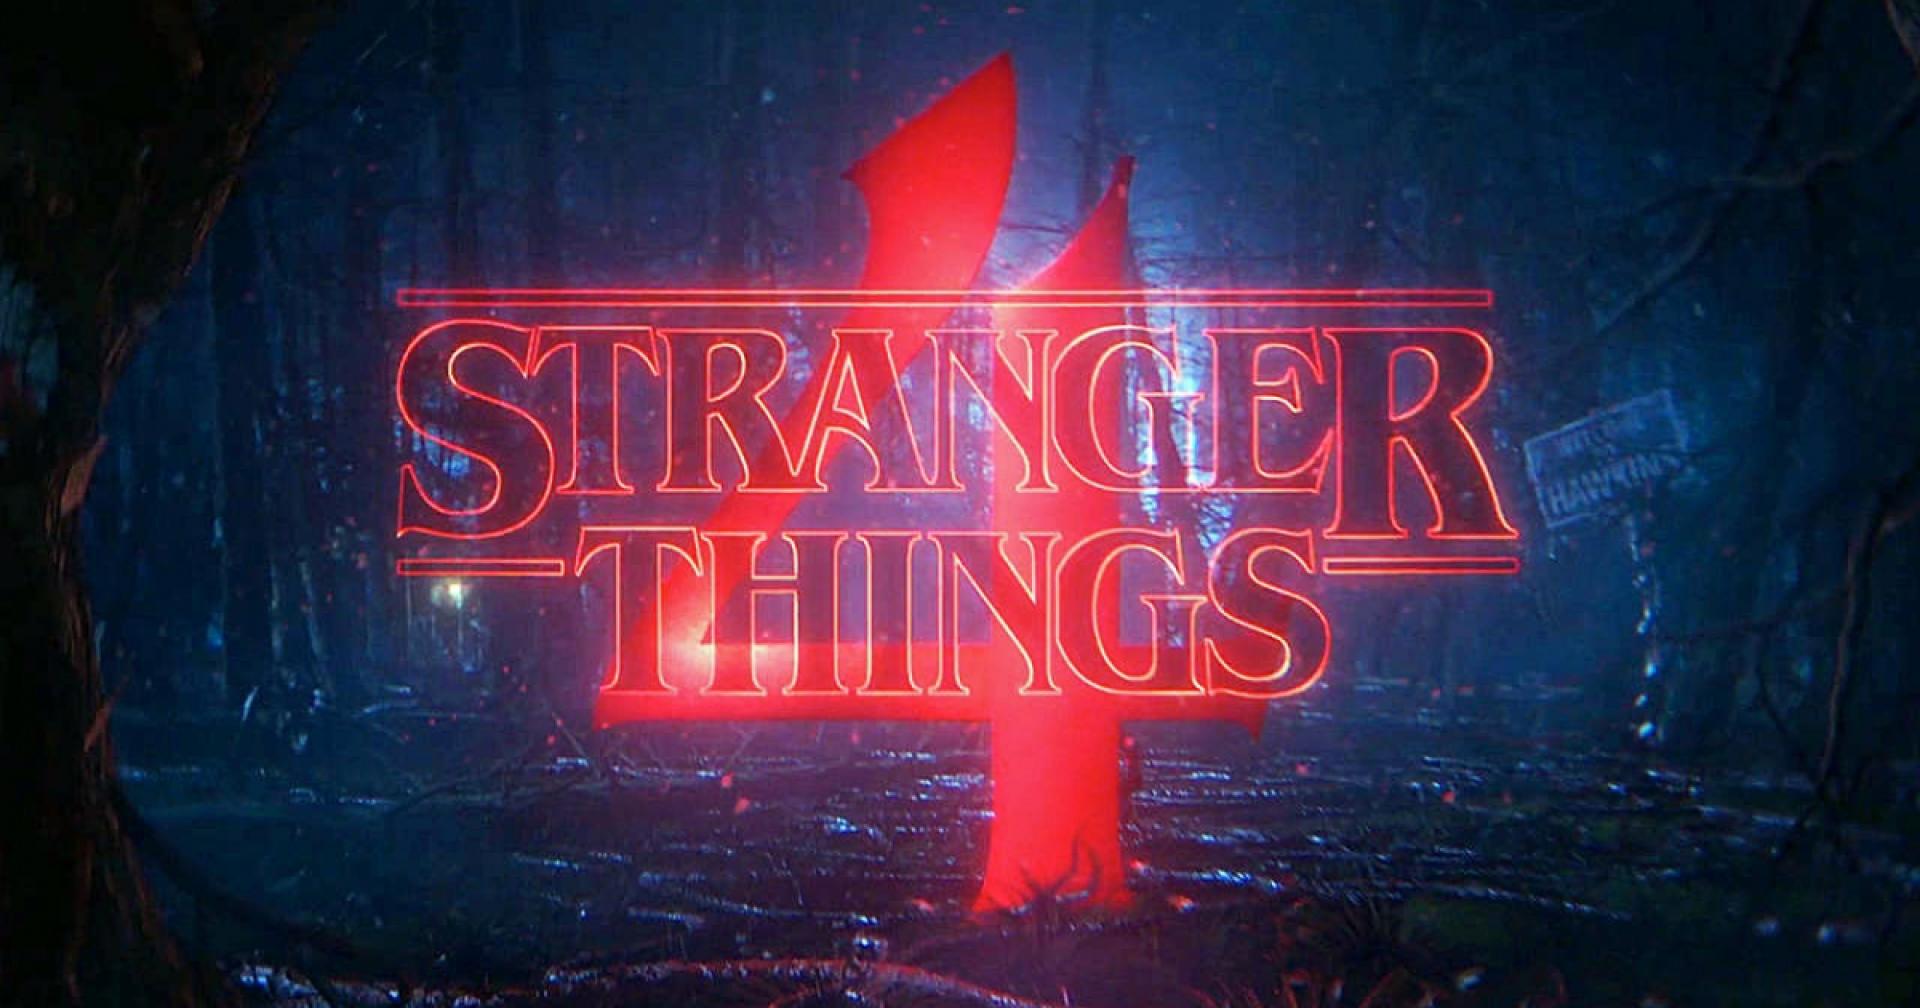 Kaptunk a Stranger Things 4. évadához egy kedvcsinálót